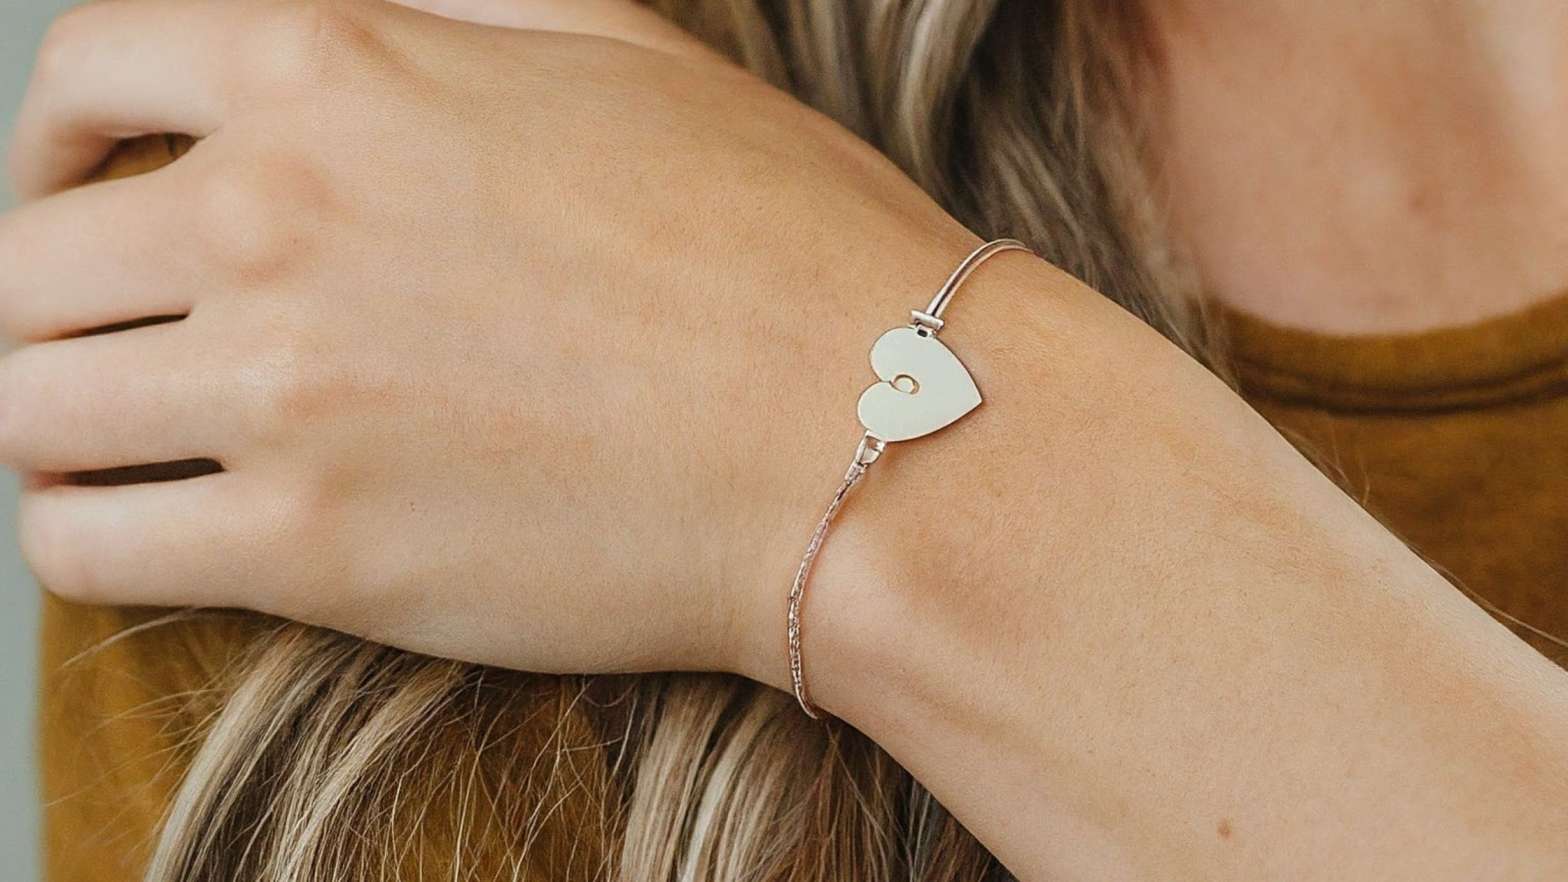 Shop Personalized Heart Bracelets Meaningful Jewelry